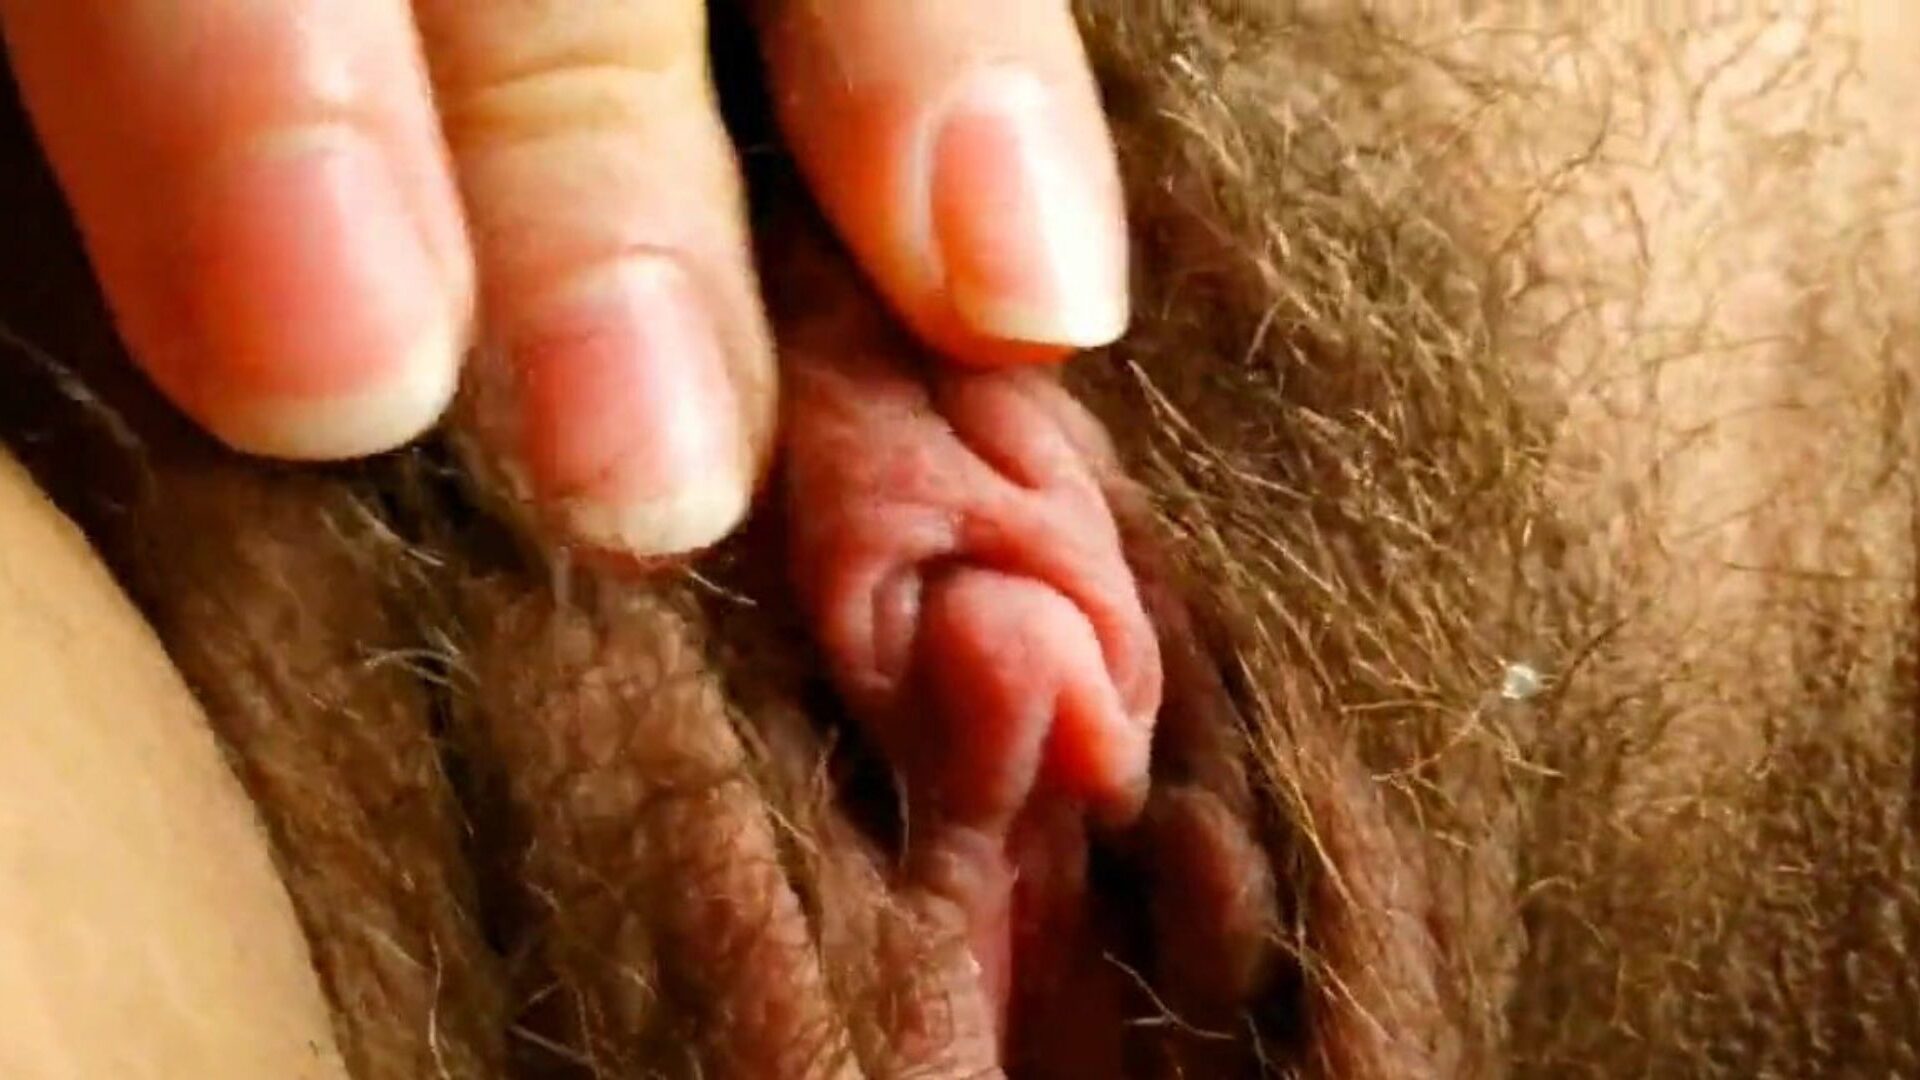 questo è il clitoride più sexy che tu abbia mai visto: hd porno af guarda questo è il clitoride più sexy che tu abbia mai visto video su xhamster - la collezione definitiva di video porno tube hardcore hd brasiliani pelosi gratis